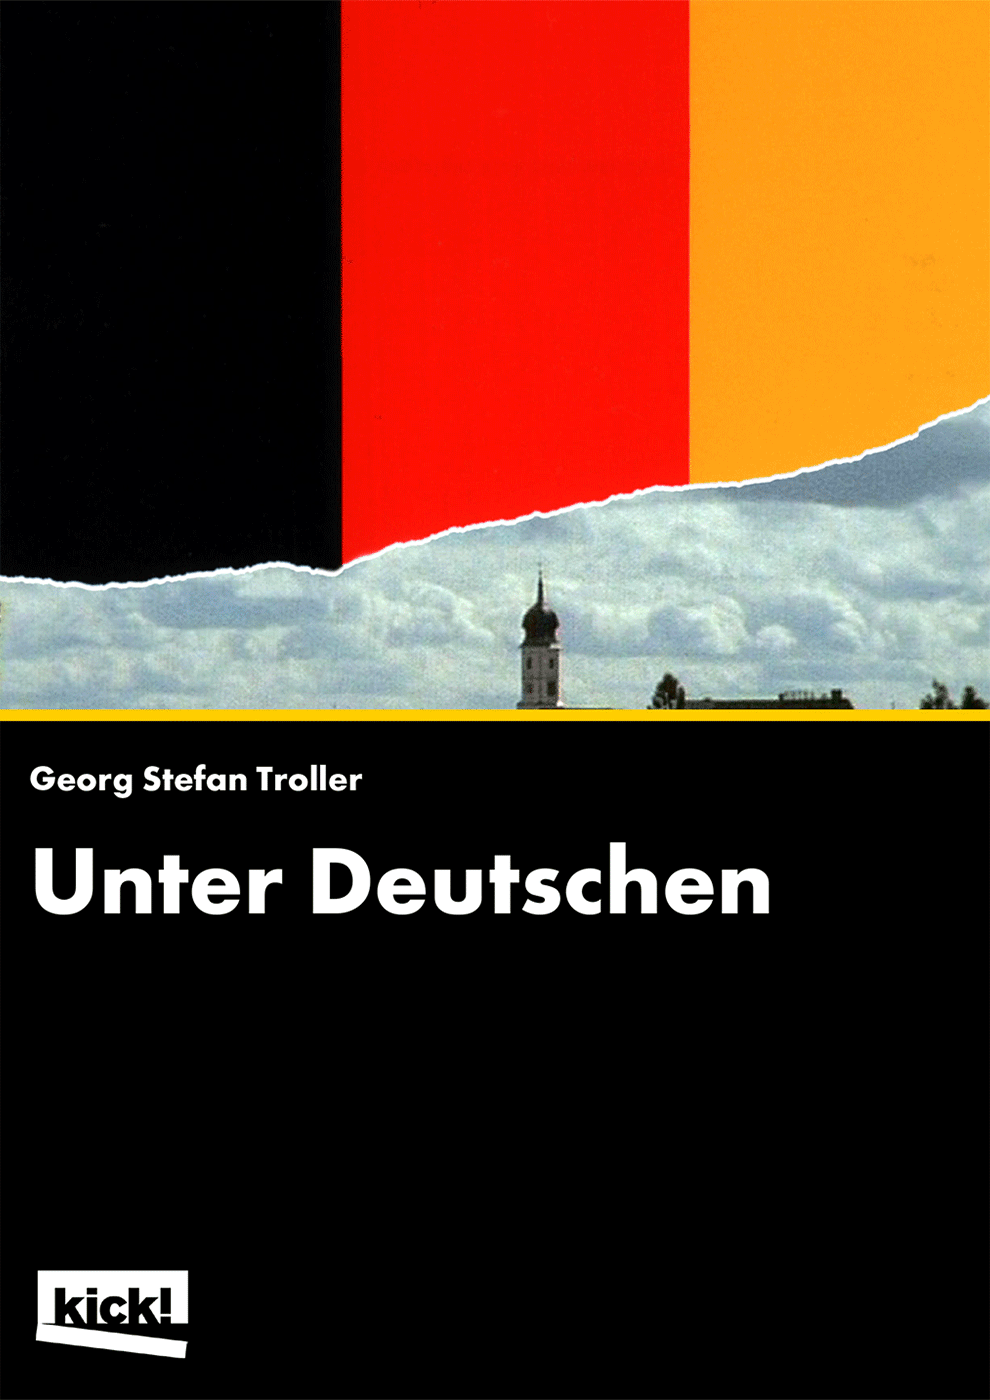 Unter Deutschen Ein Film von Georg Stefan Troller